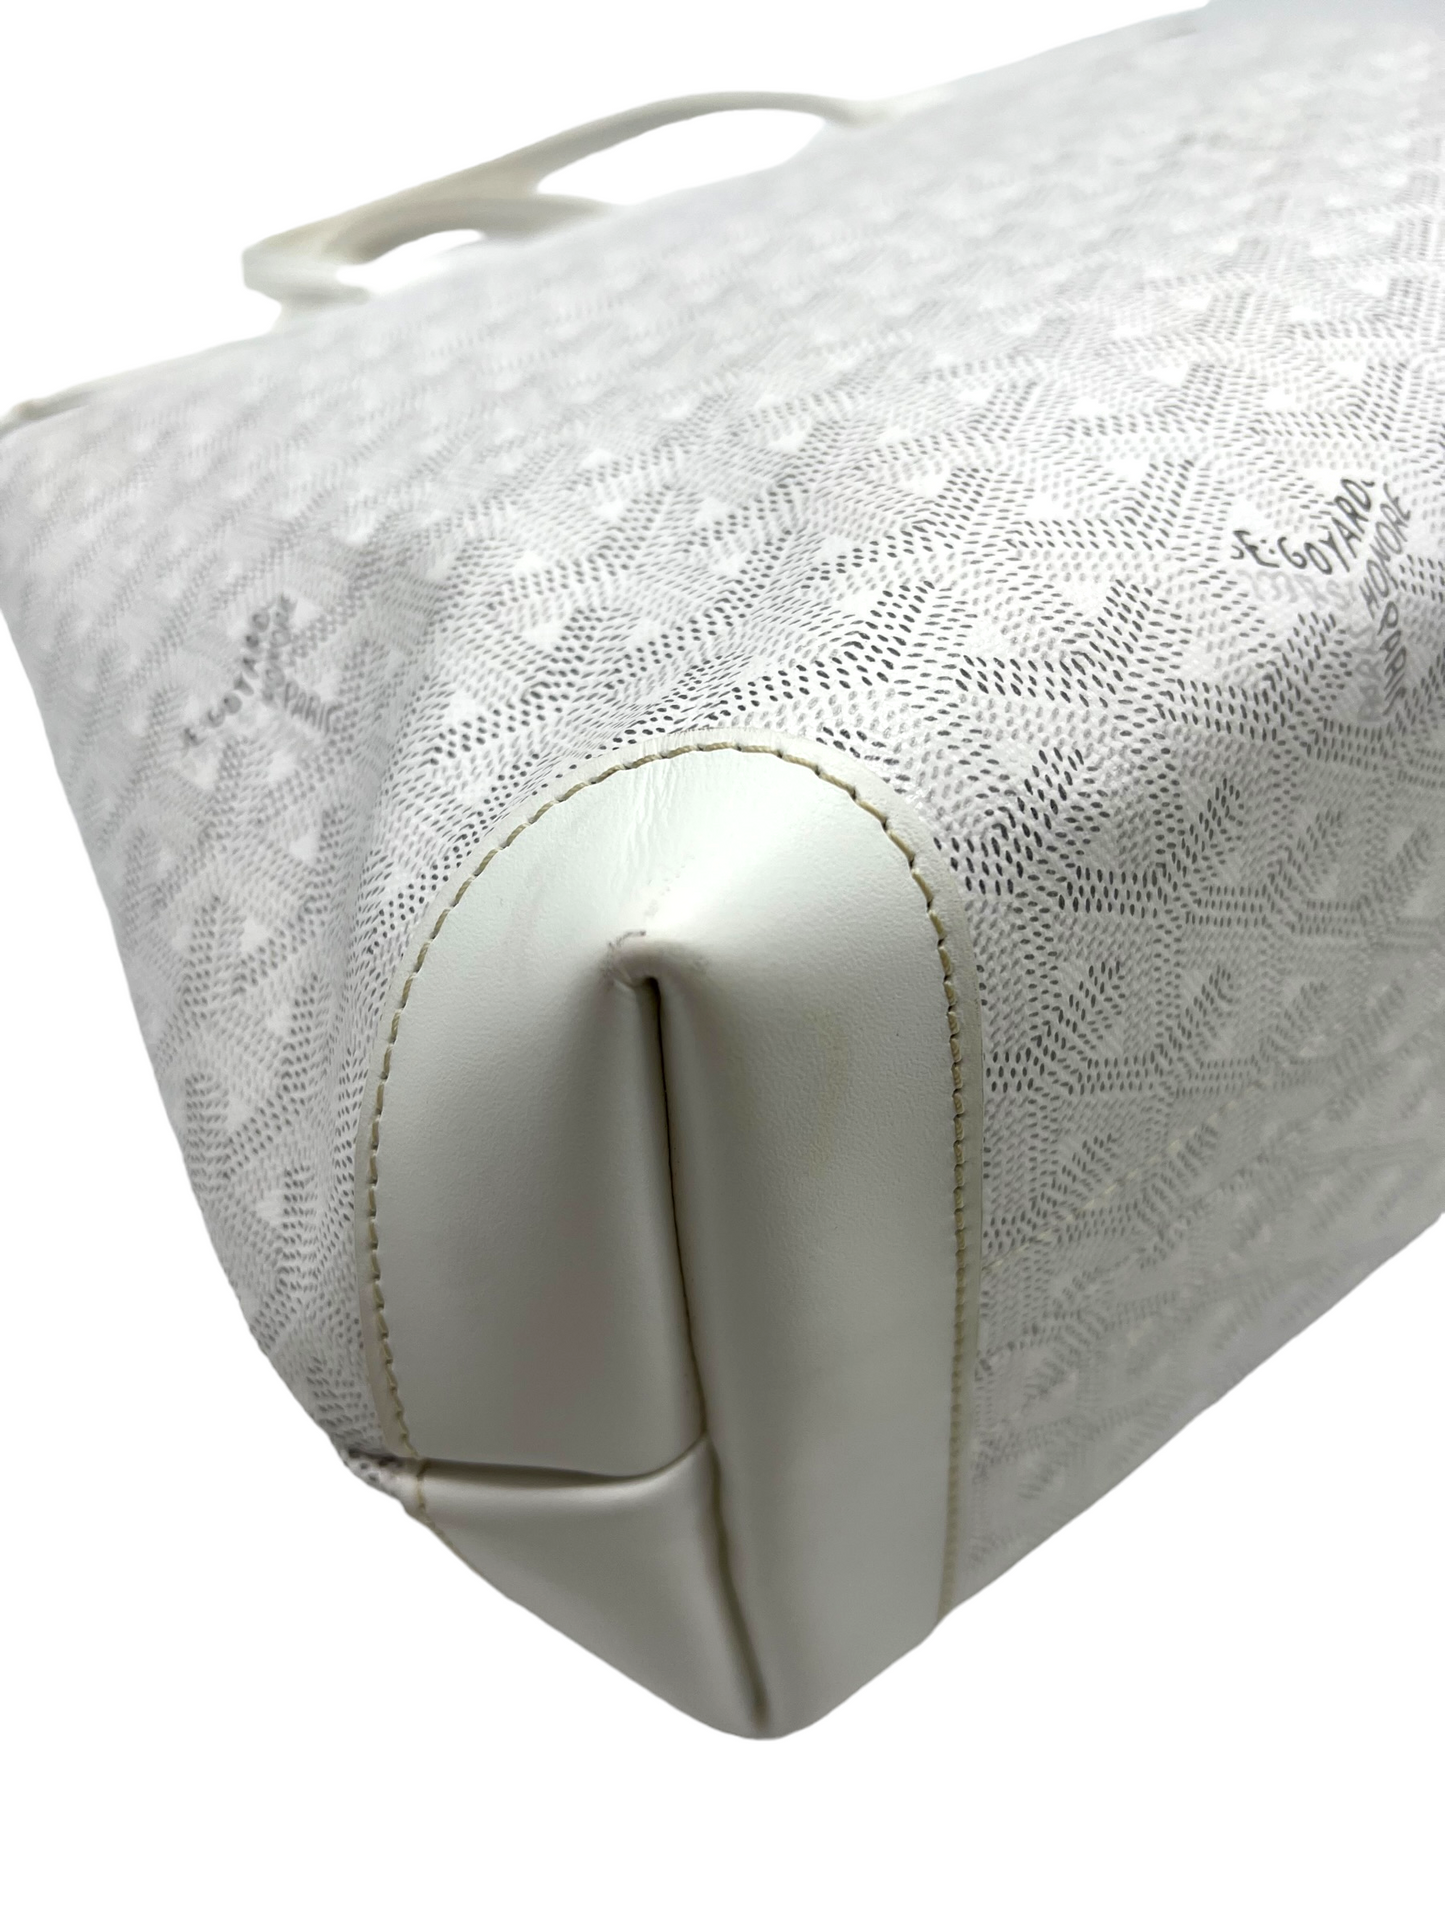 Goyard White Bellechasse PM Shoulder Bag